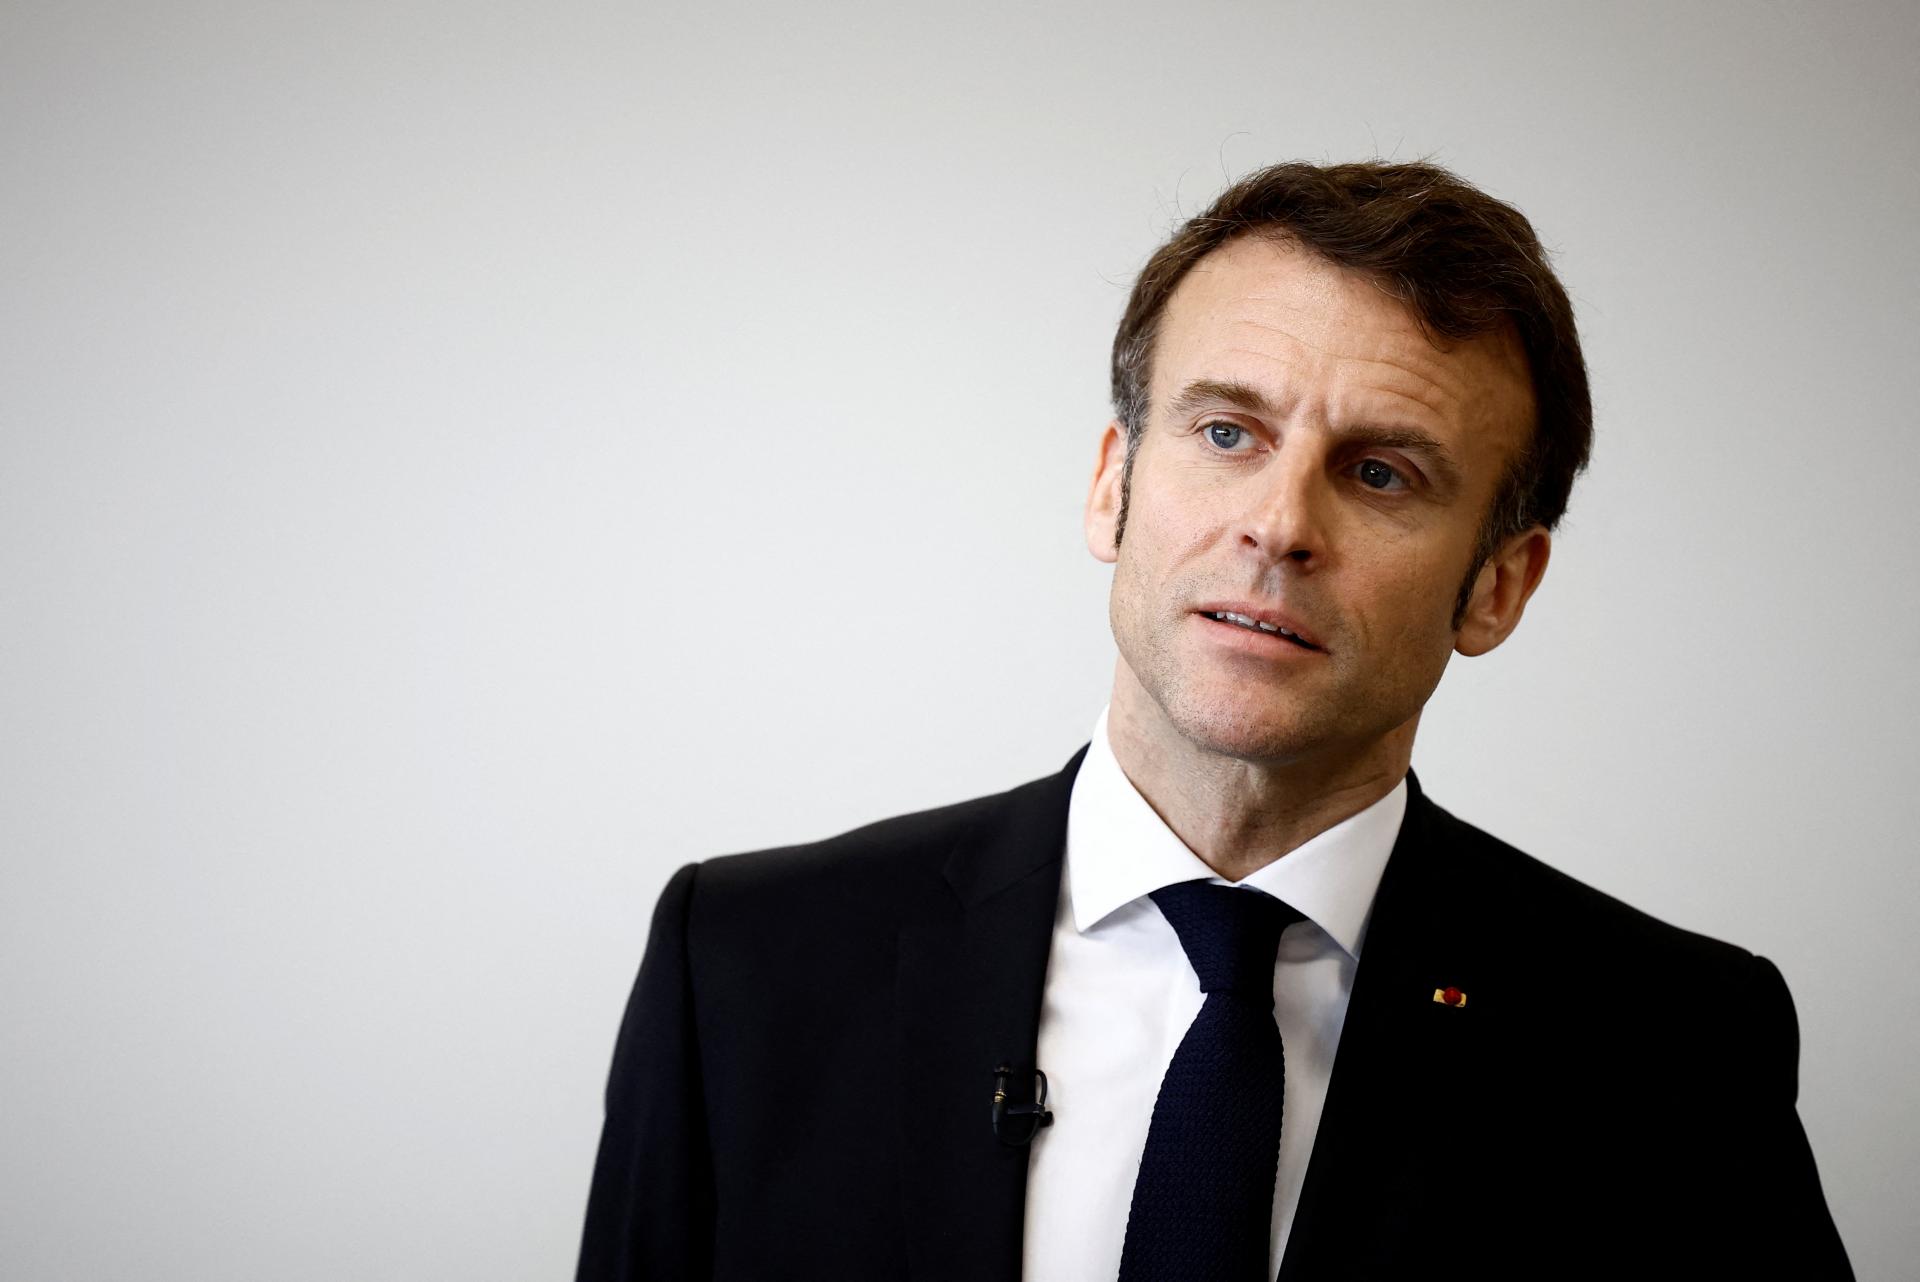 L’ère de l’ingérence française dans les affaires africaines est révolue, a déclaré Macron à propos de la stratégie postcoloniale